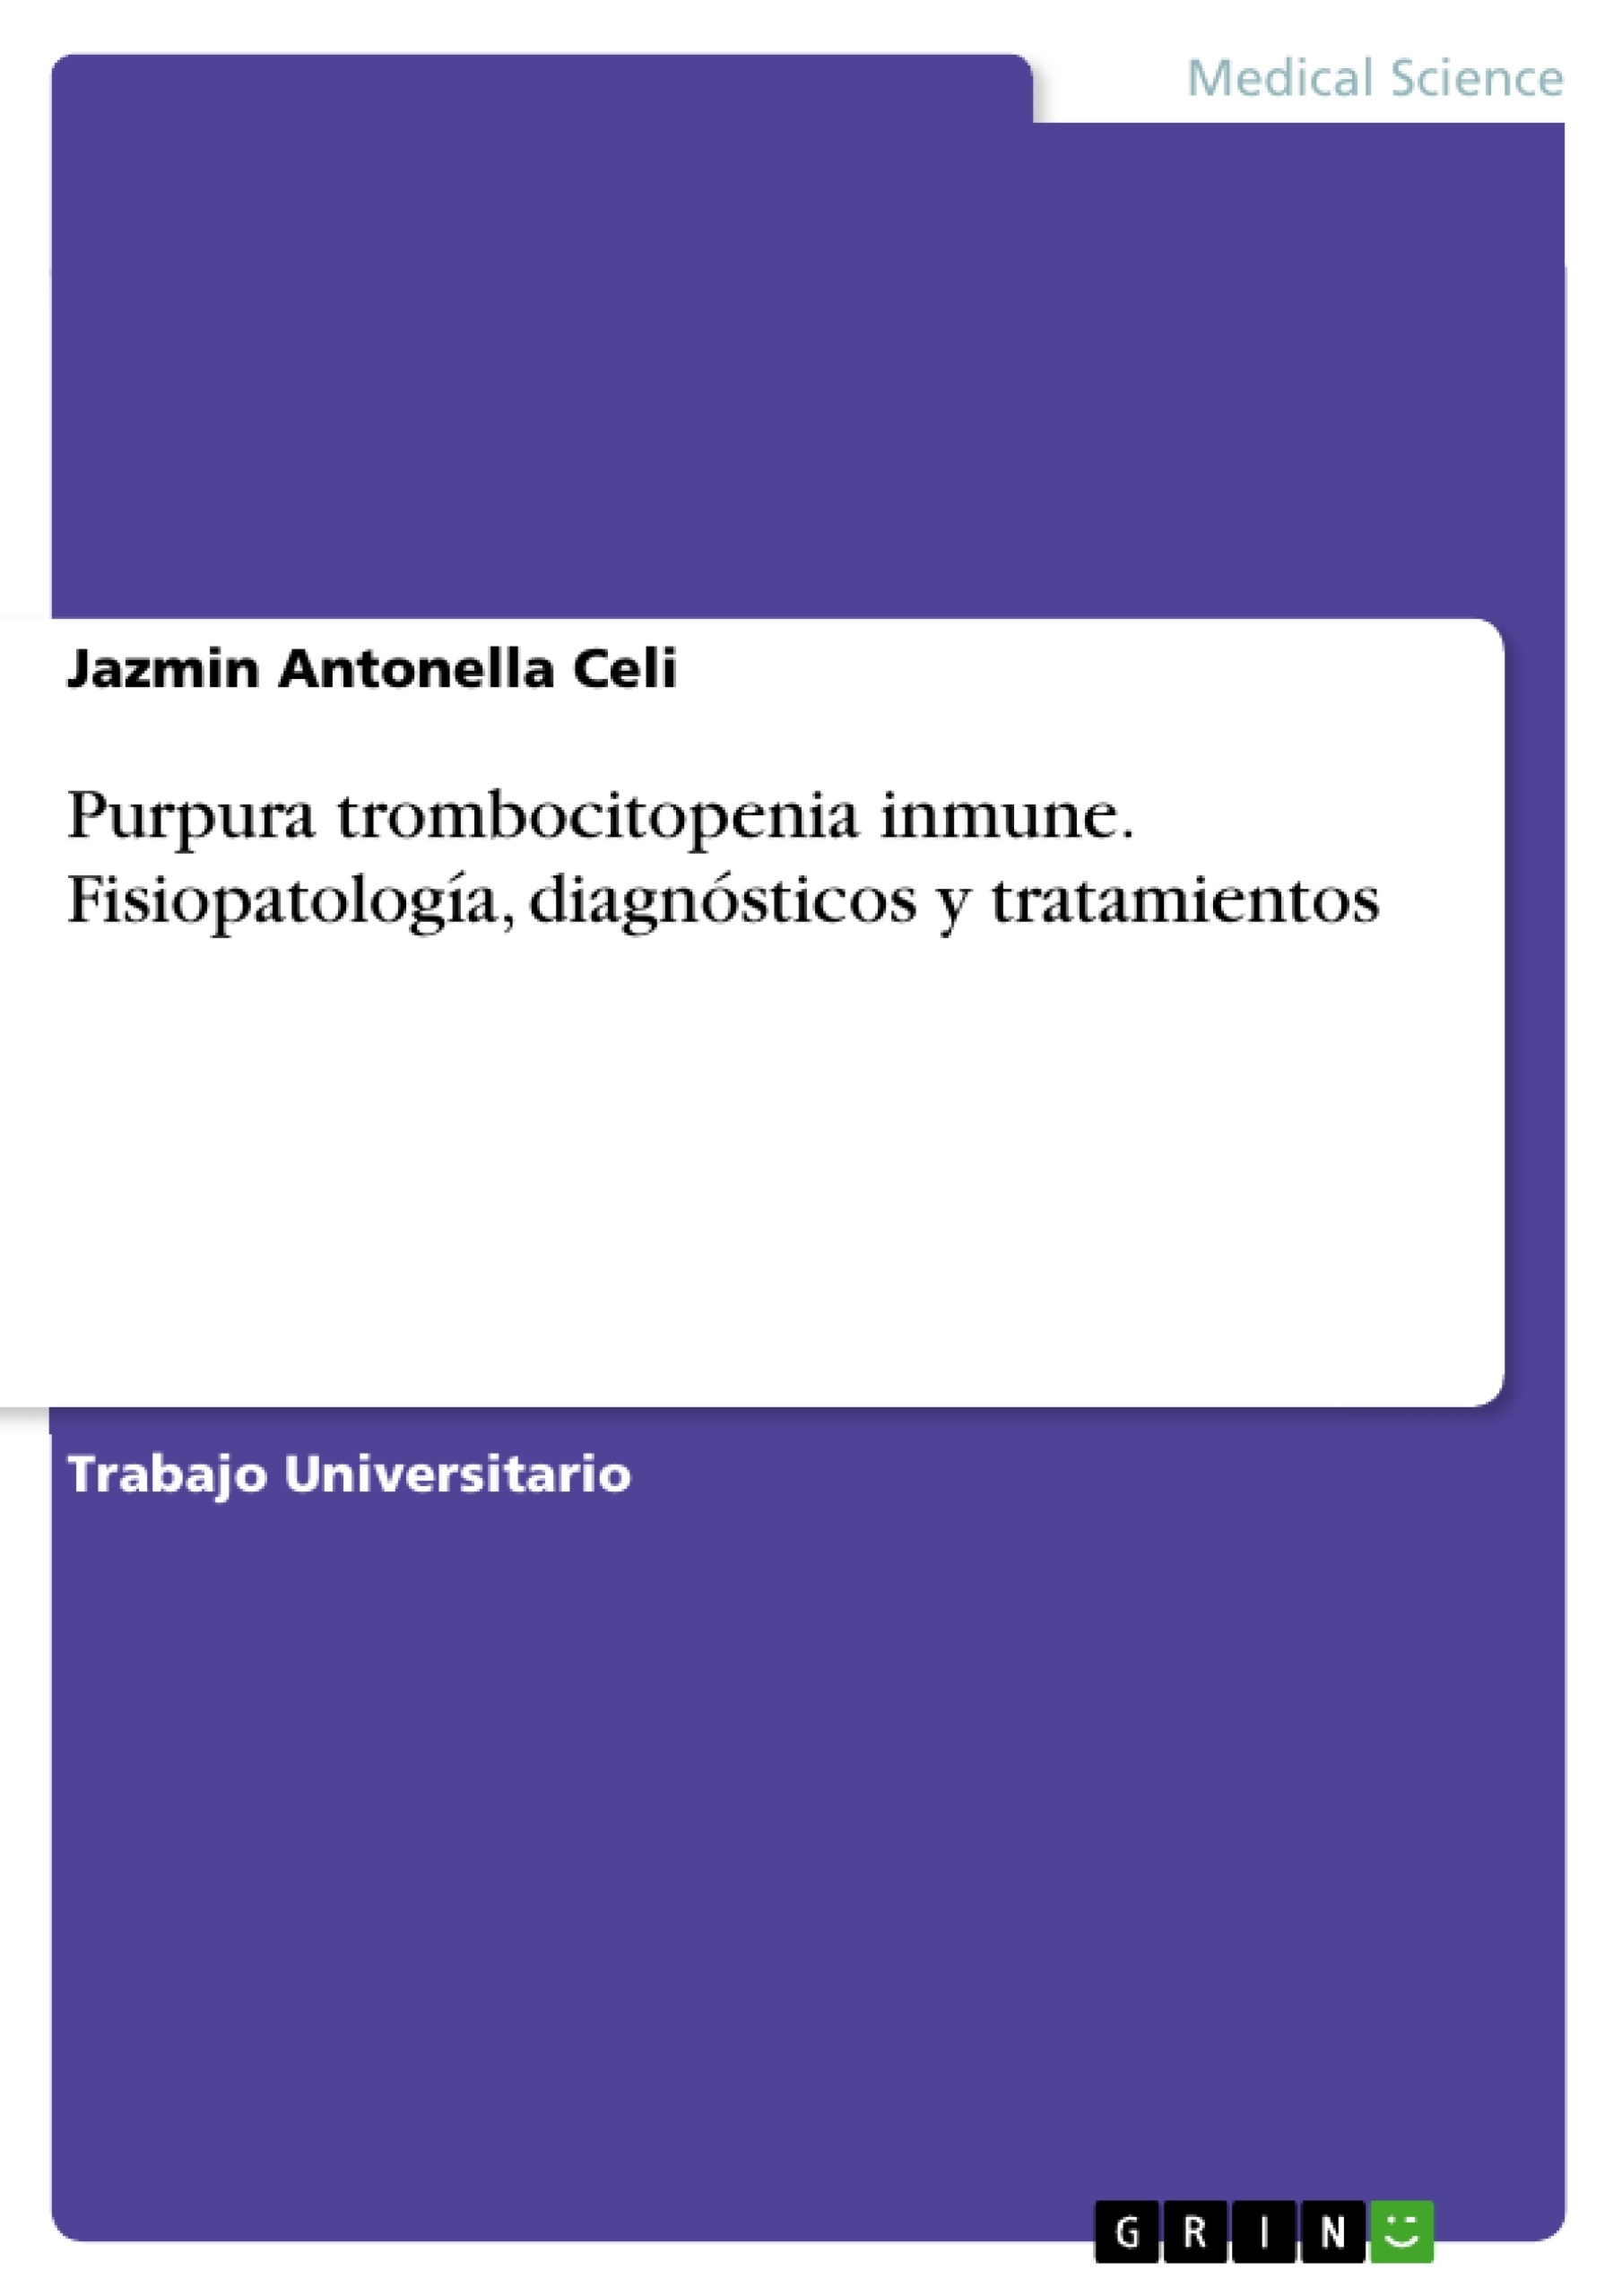 Título: Purpura trombocitopenia inmune. Fisiopatología, diagnósticos y tratamientos